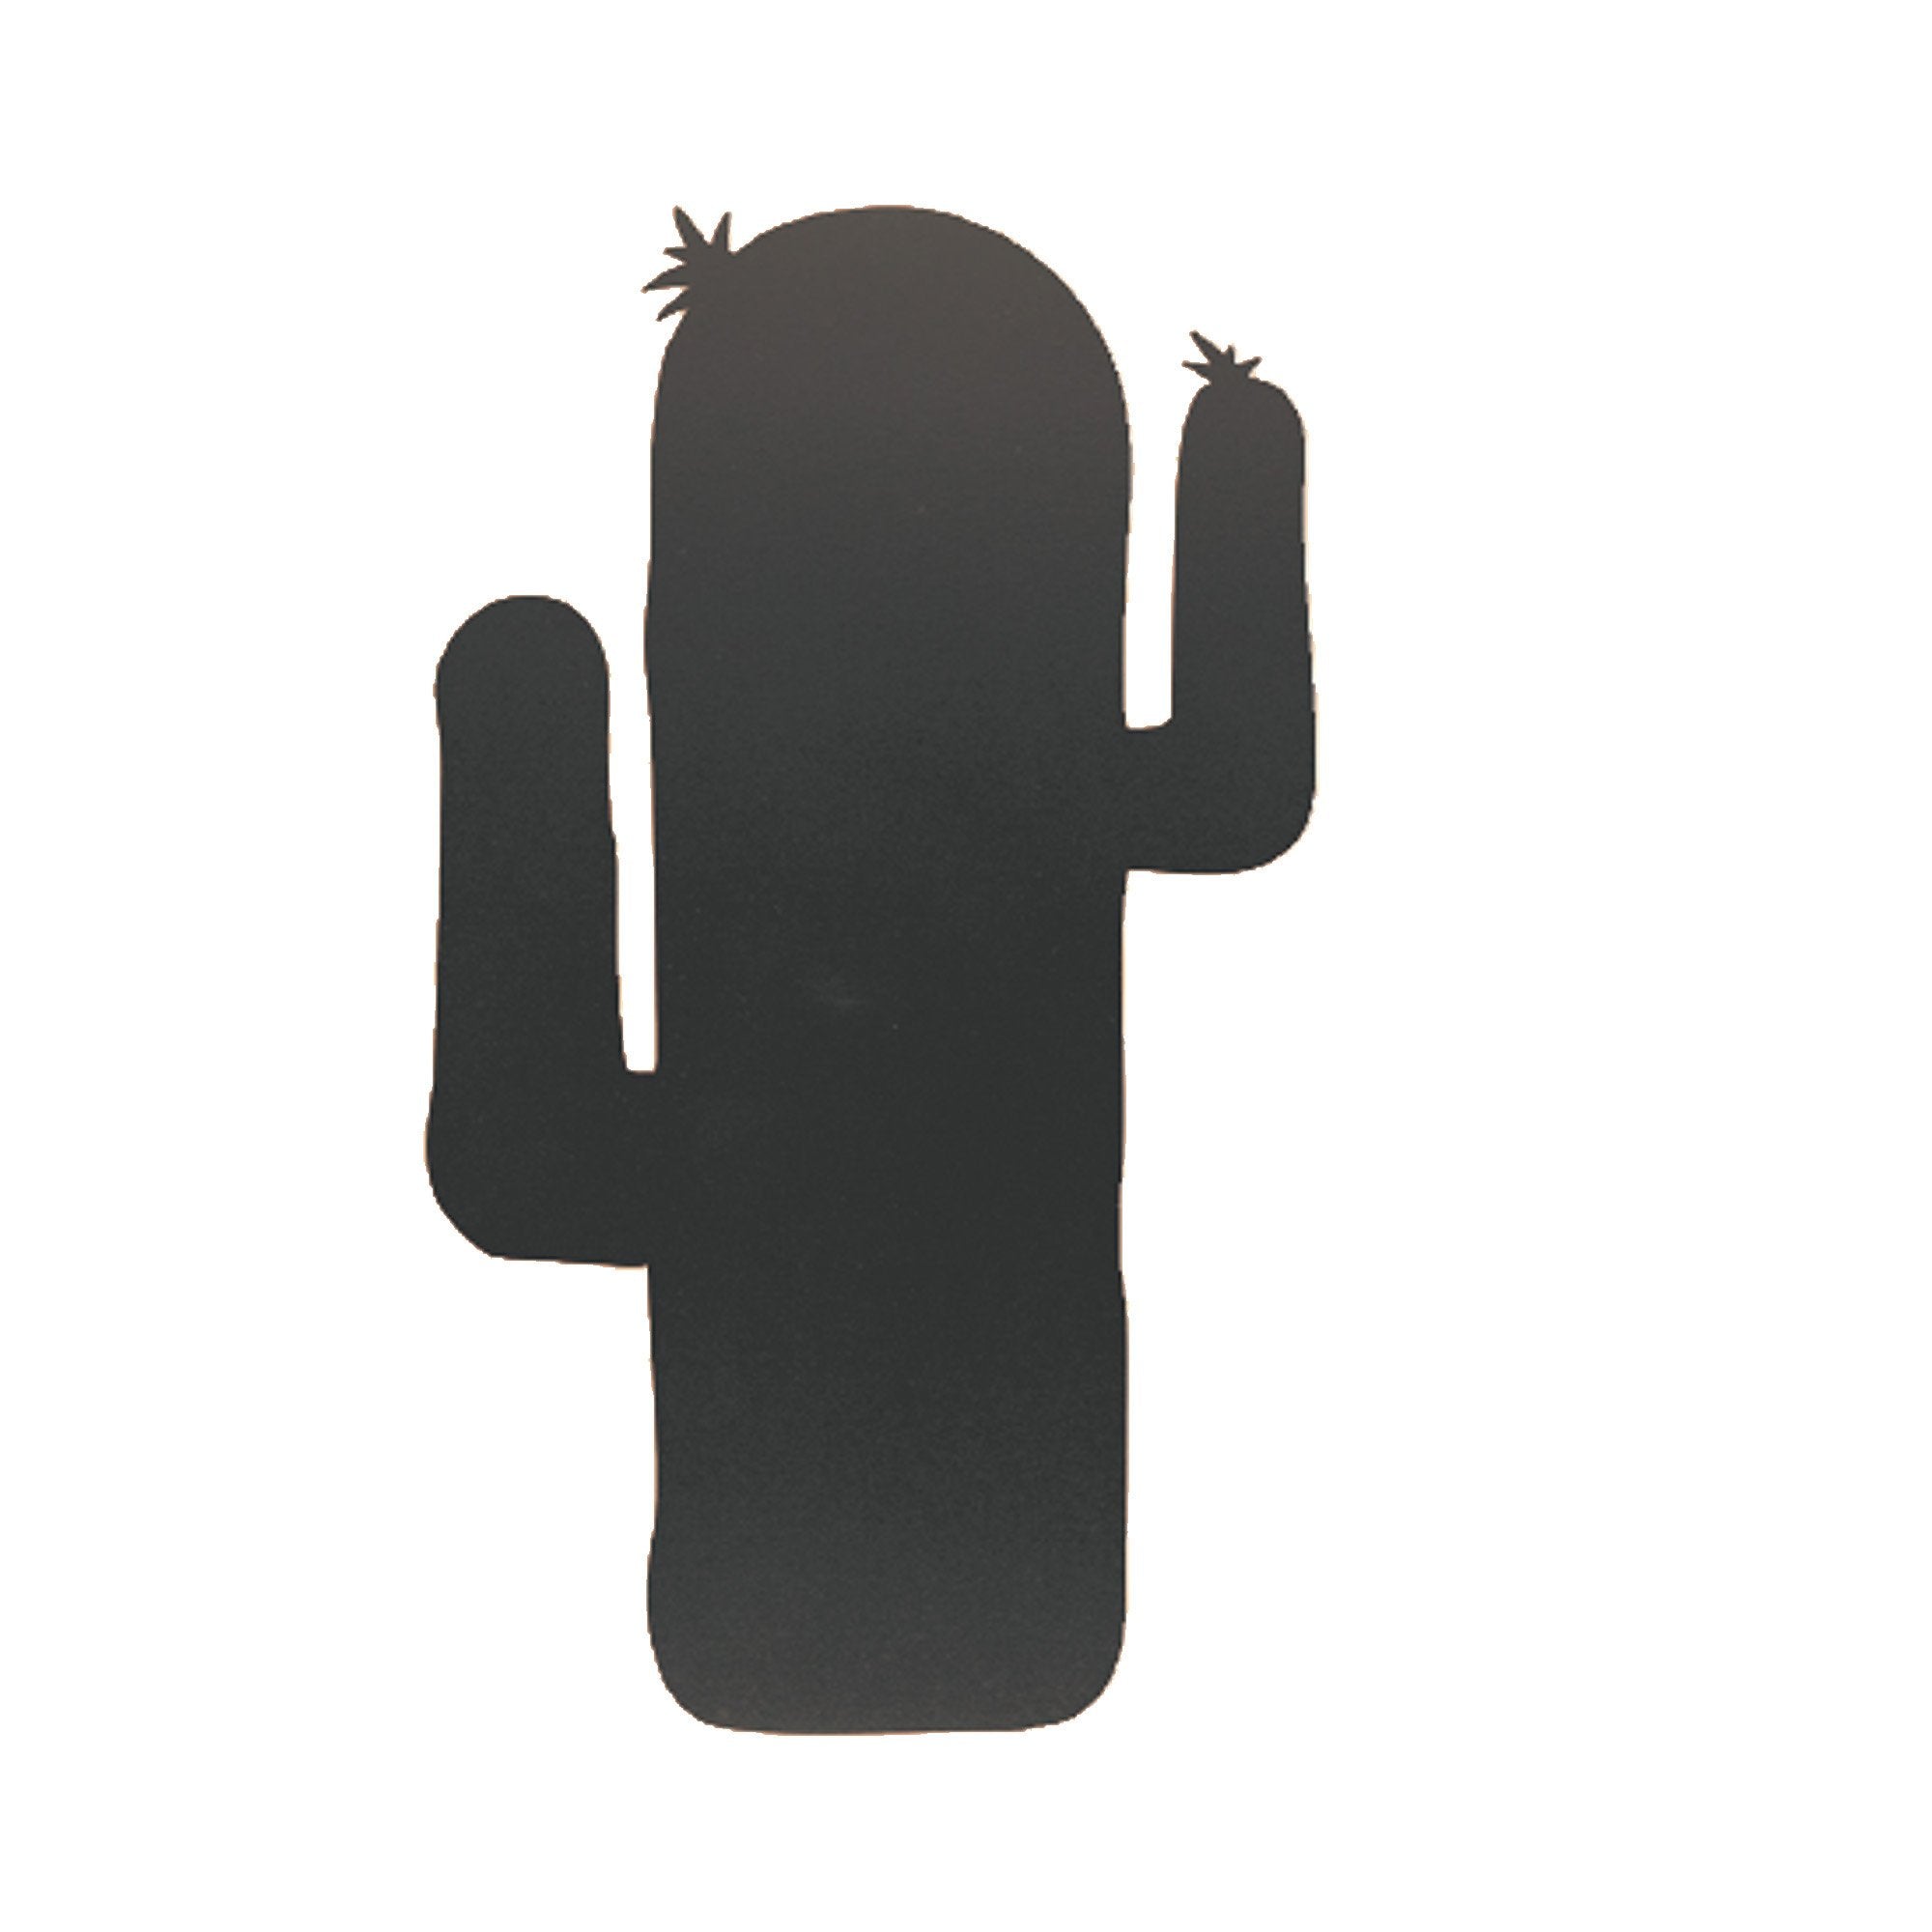 securit-lavagna-parete-cactus-silhouette